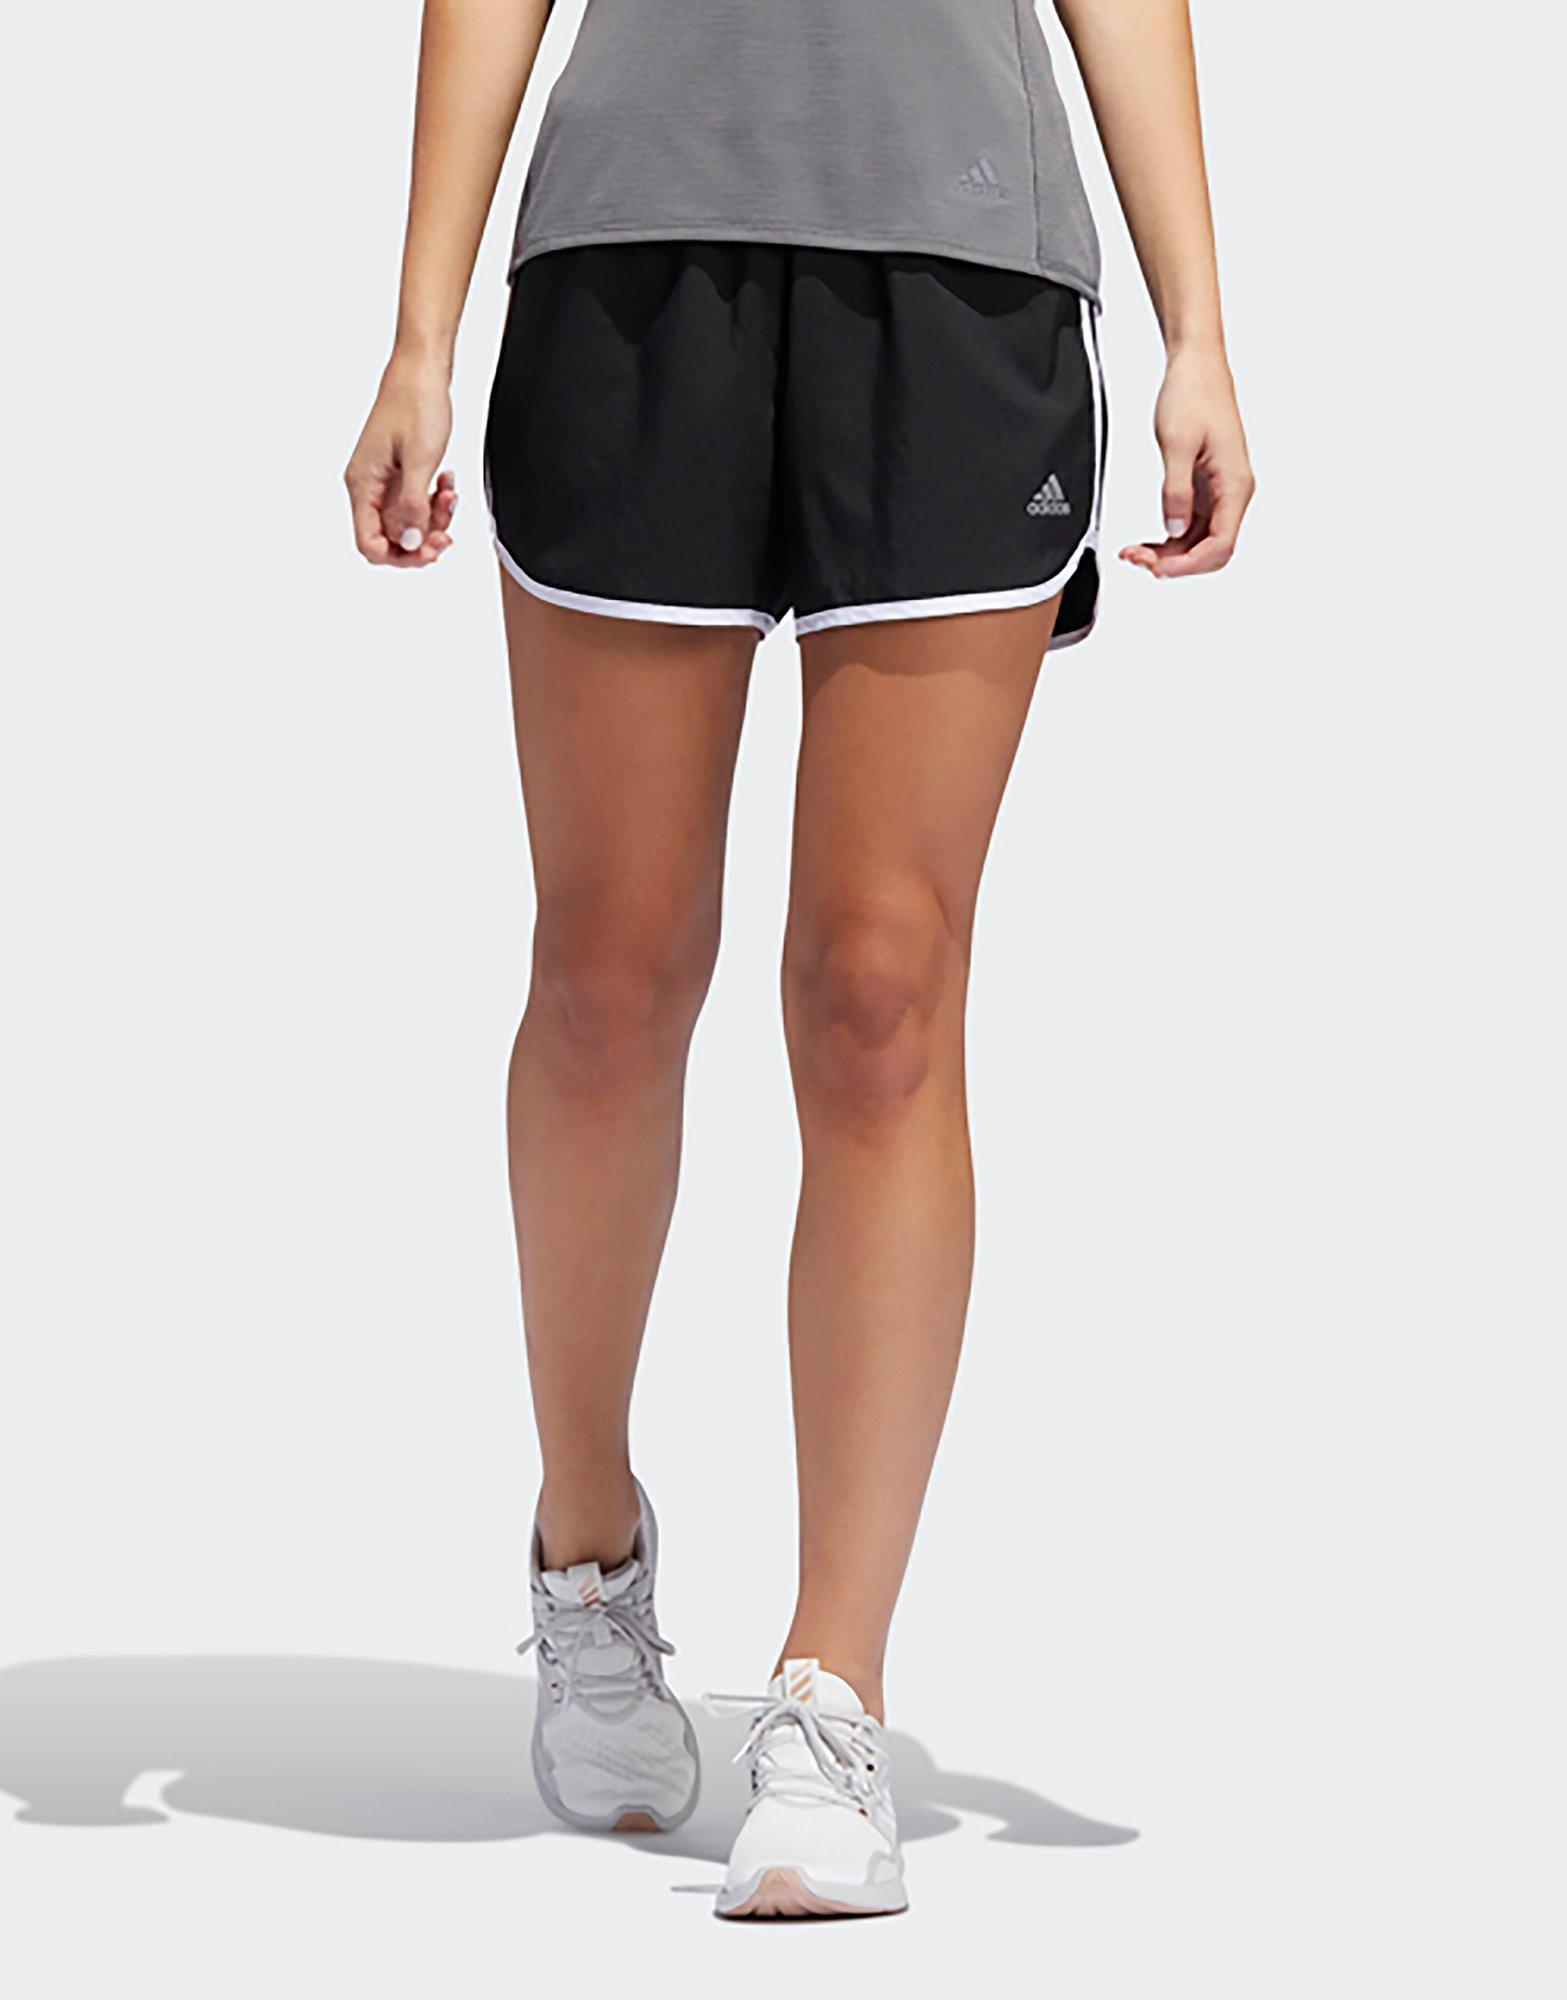 adidas marathon running shorts